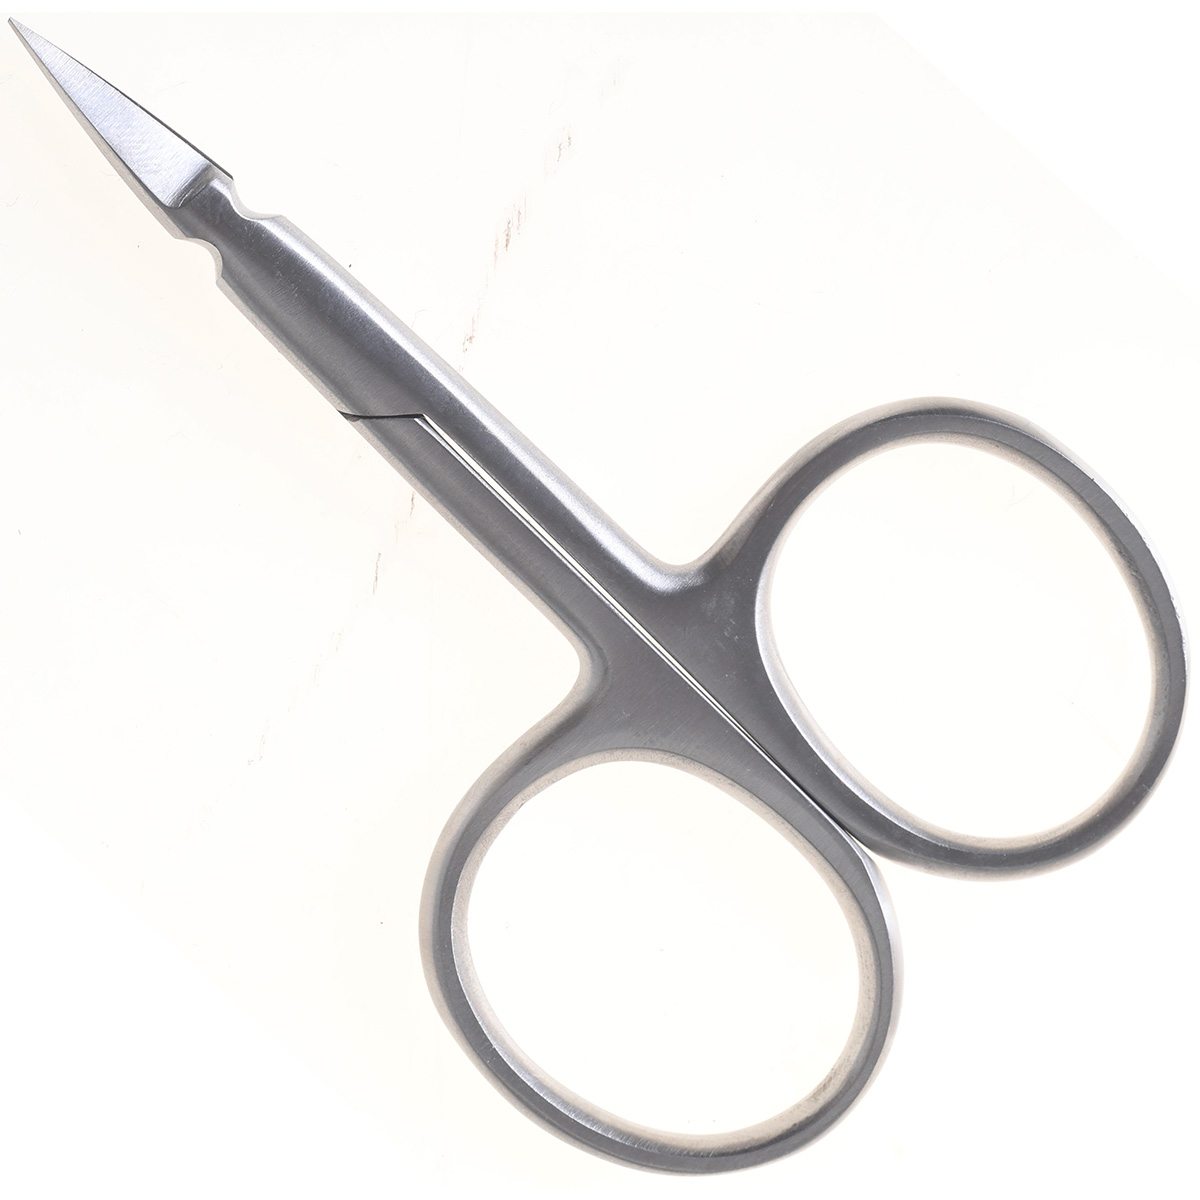 Dr Slick Eco Arrow 3.5 Scissor